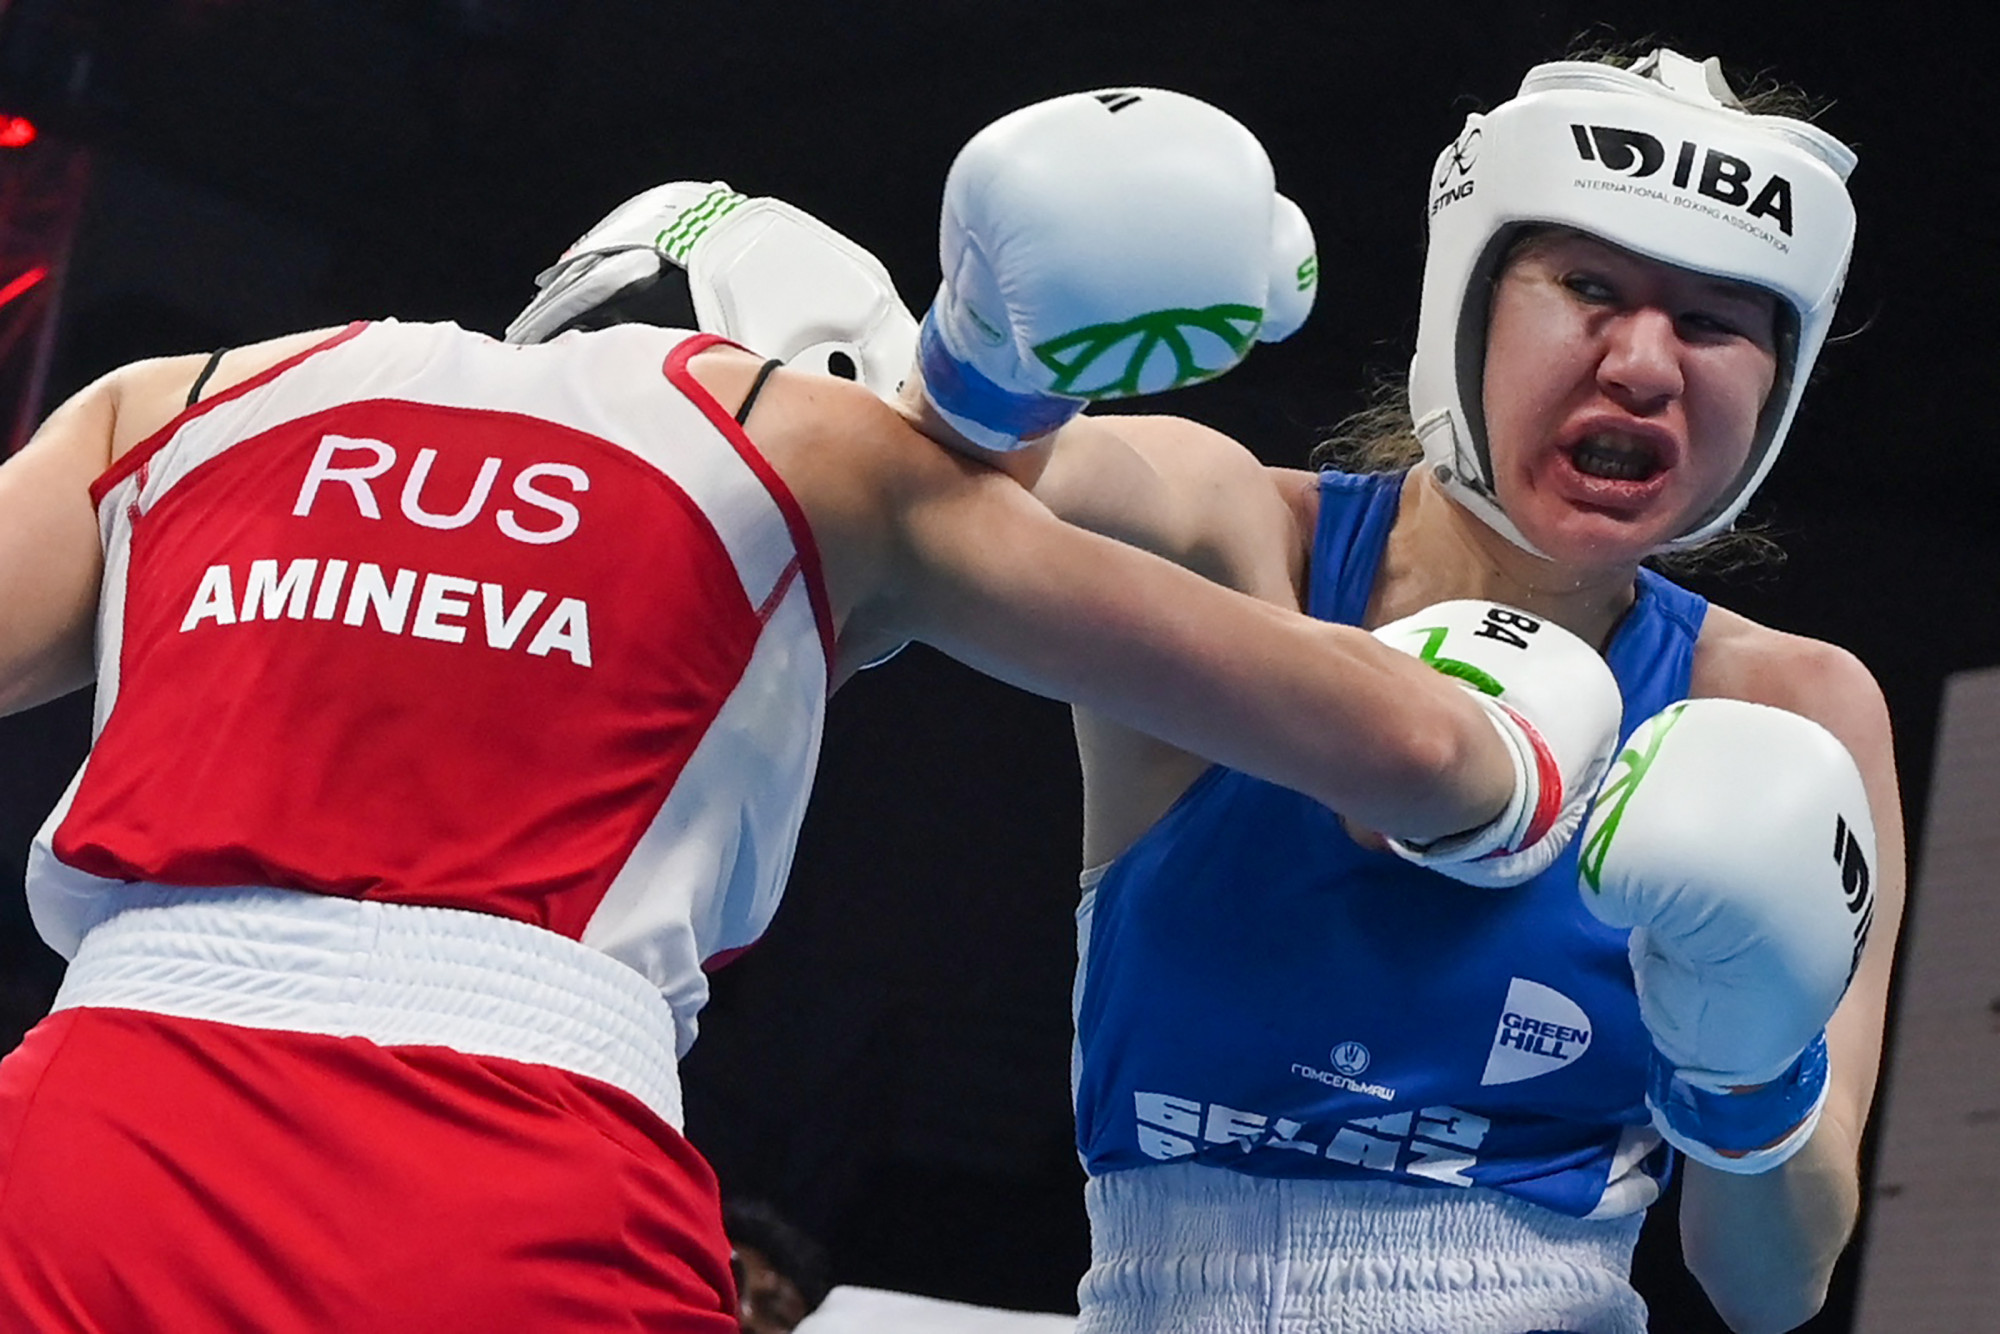 Orosz és fehérorosz versenyző összecsapása az újdelhi bokszvébén március 18-án.